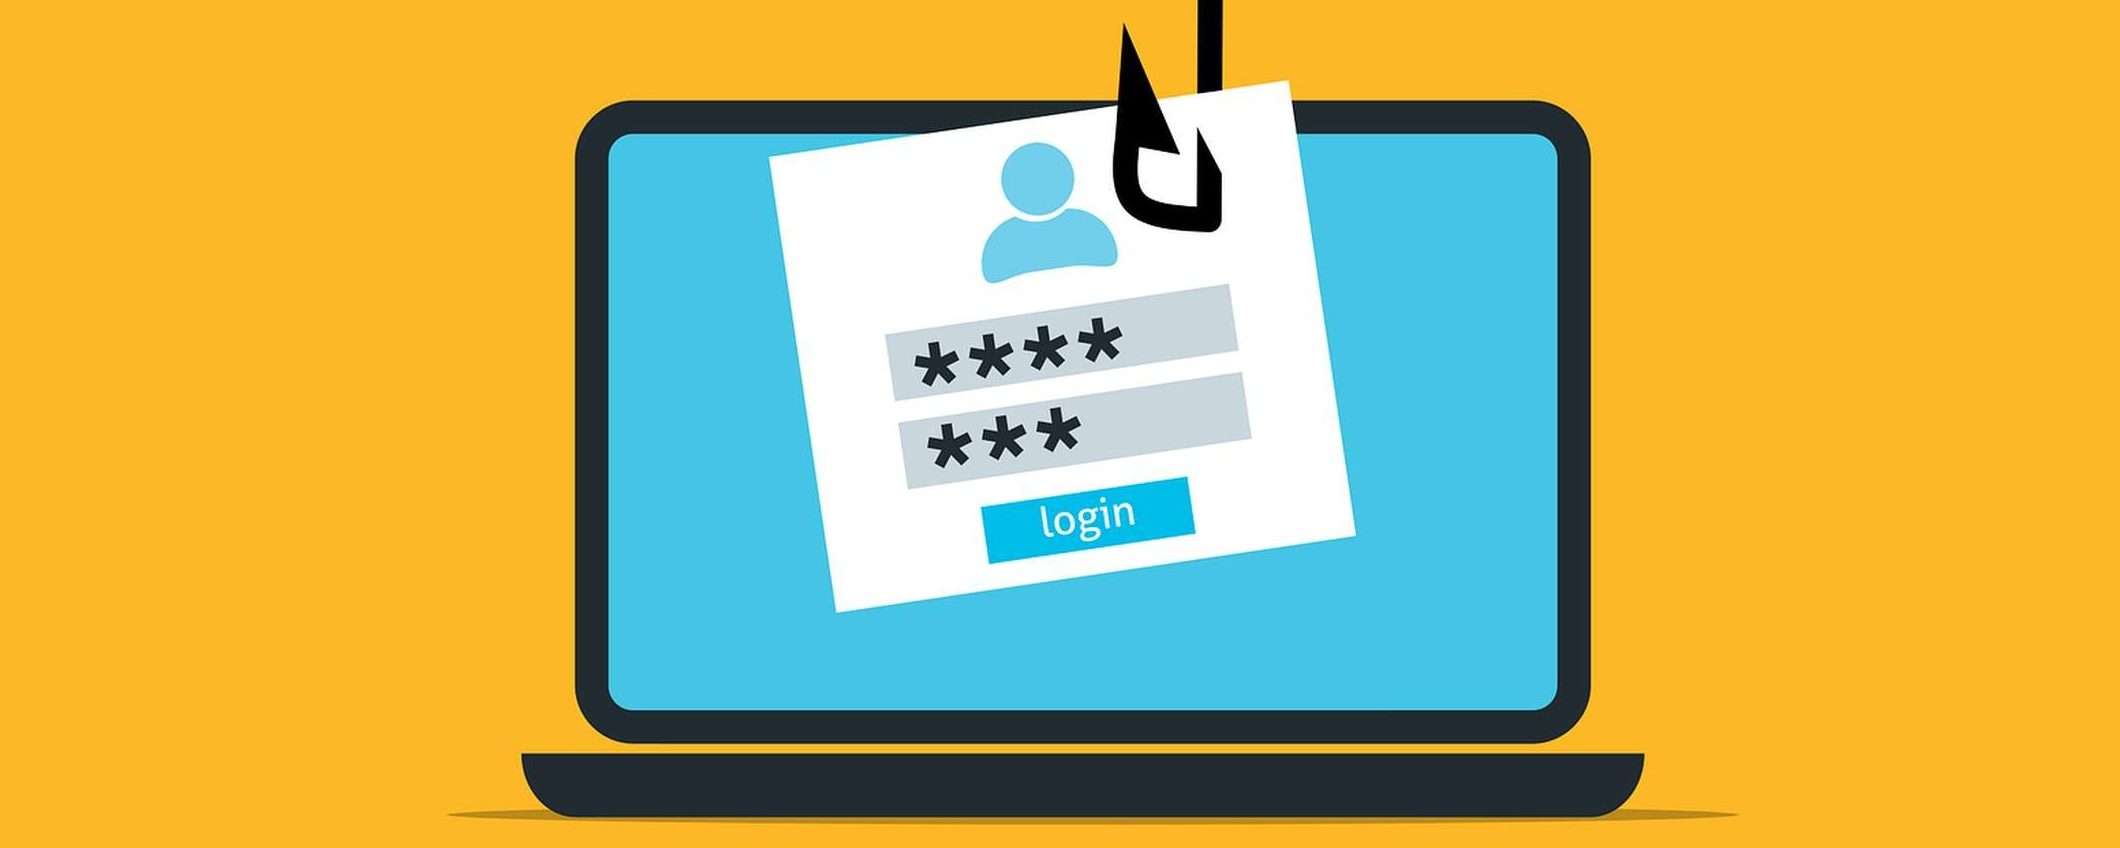 Come i truffatori possono rovinare le tue vacanze con il phishing